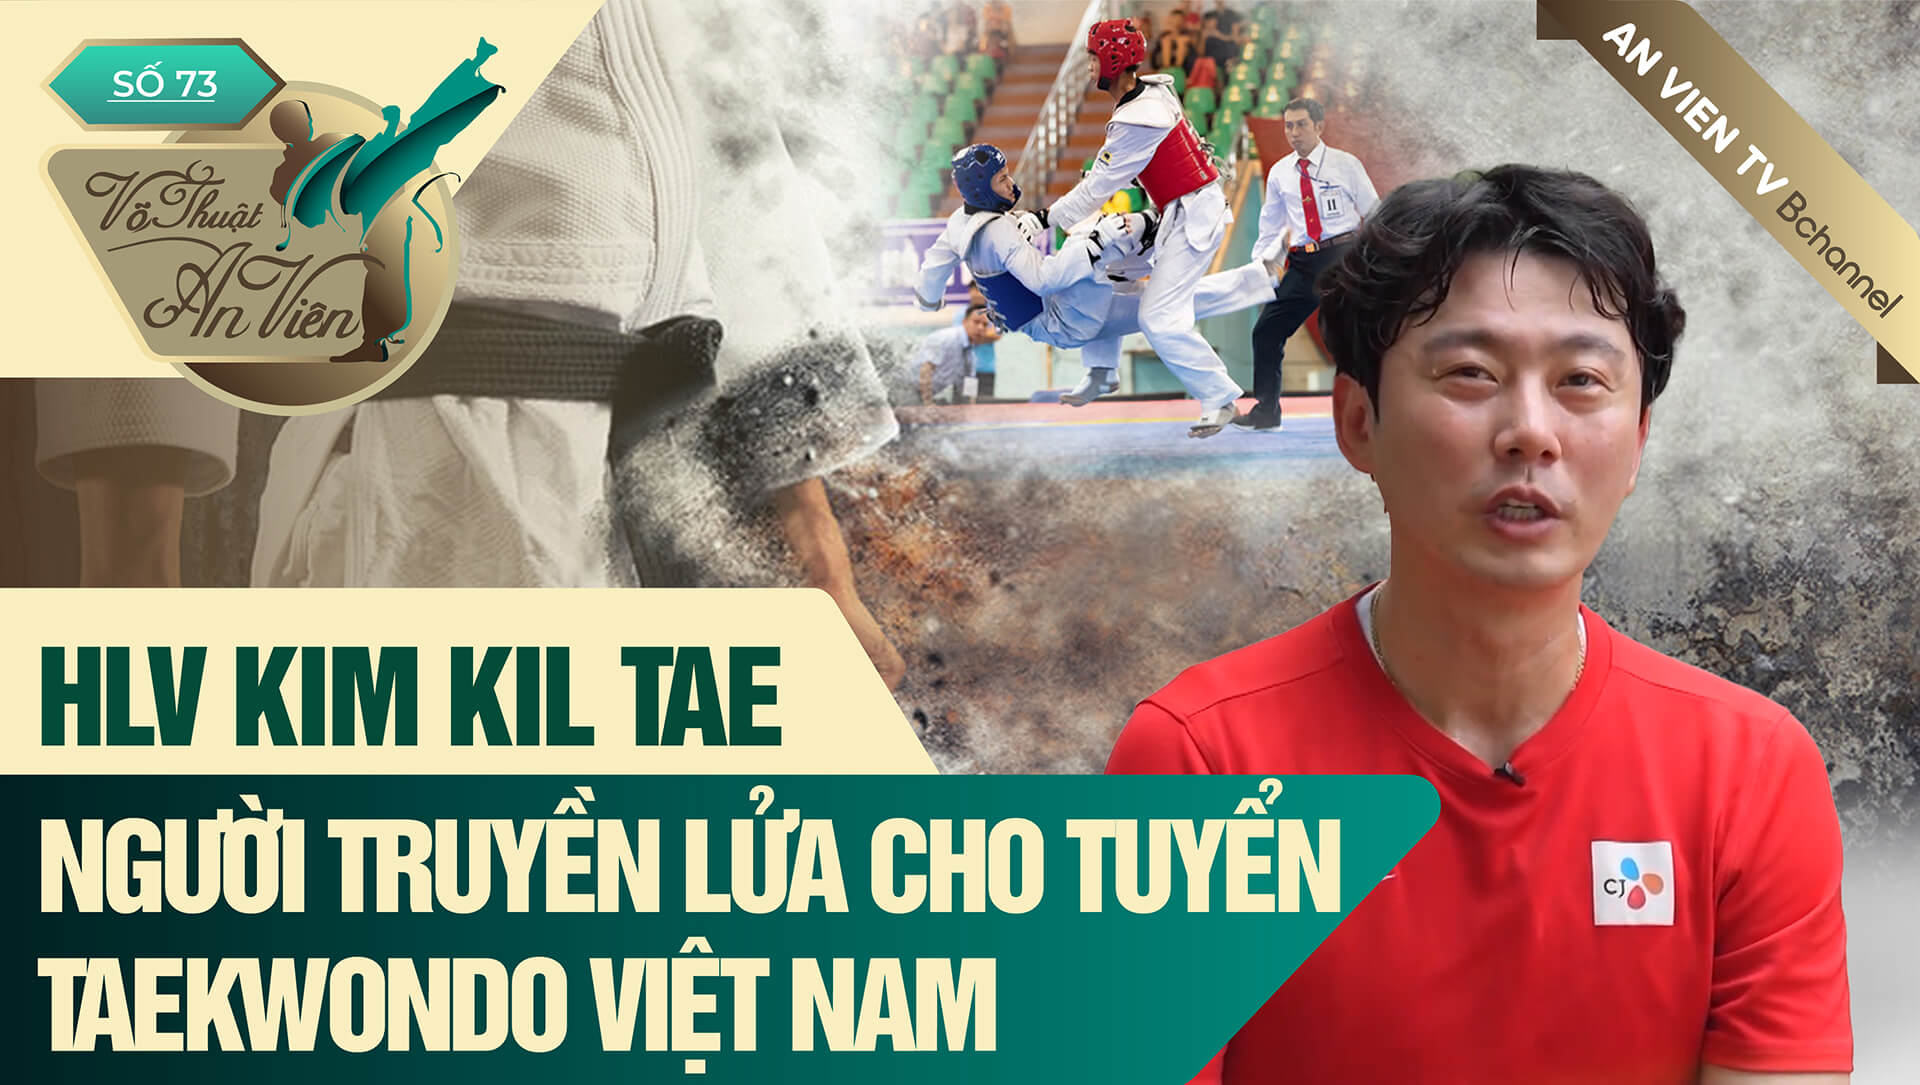 HLV Kim Kil Tae - Người Truyền Lửa cho Đội tuyển Taekwondo Việt Nam